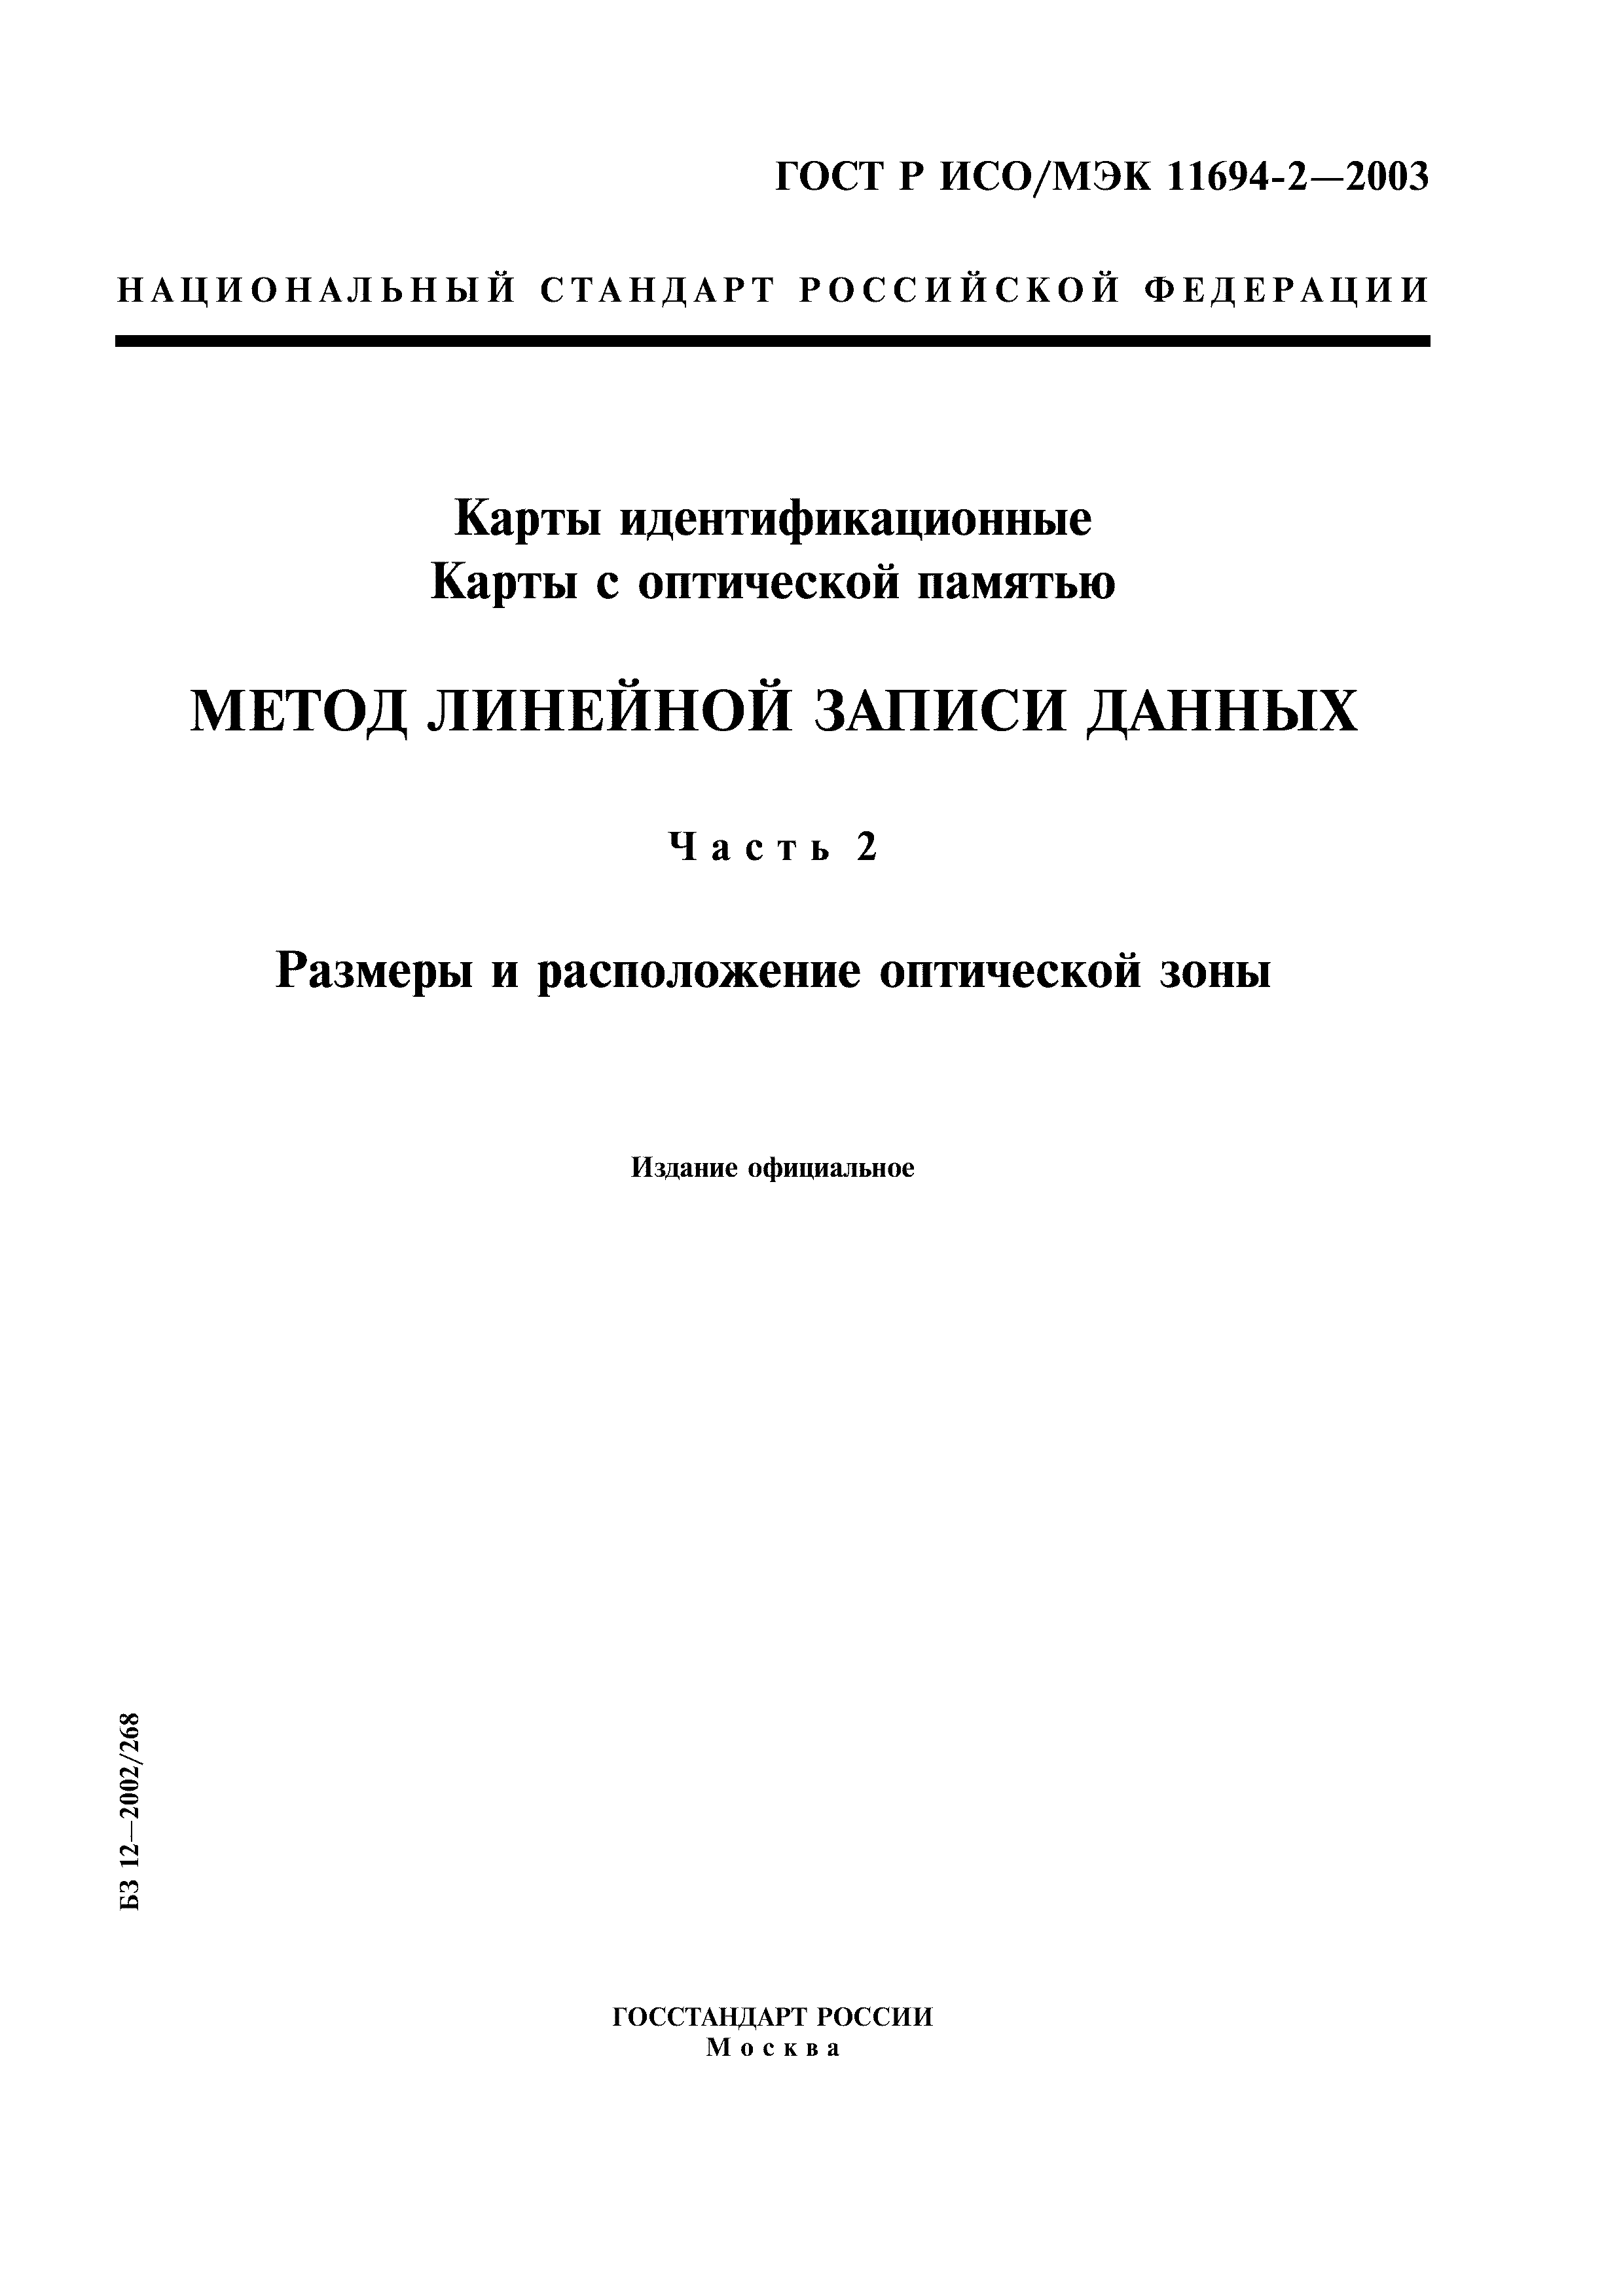 ГОСТ Р ИСО/МЭК 11694-2-2003